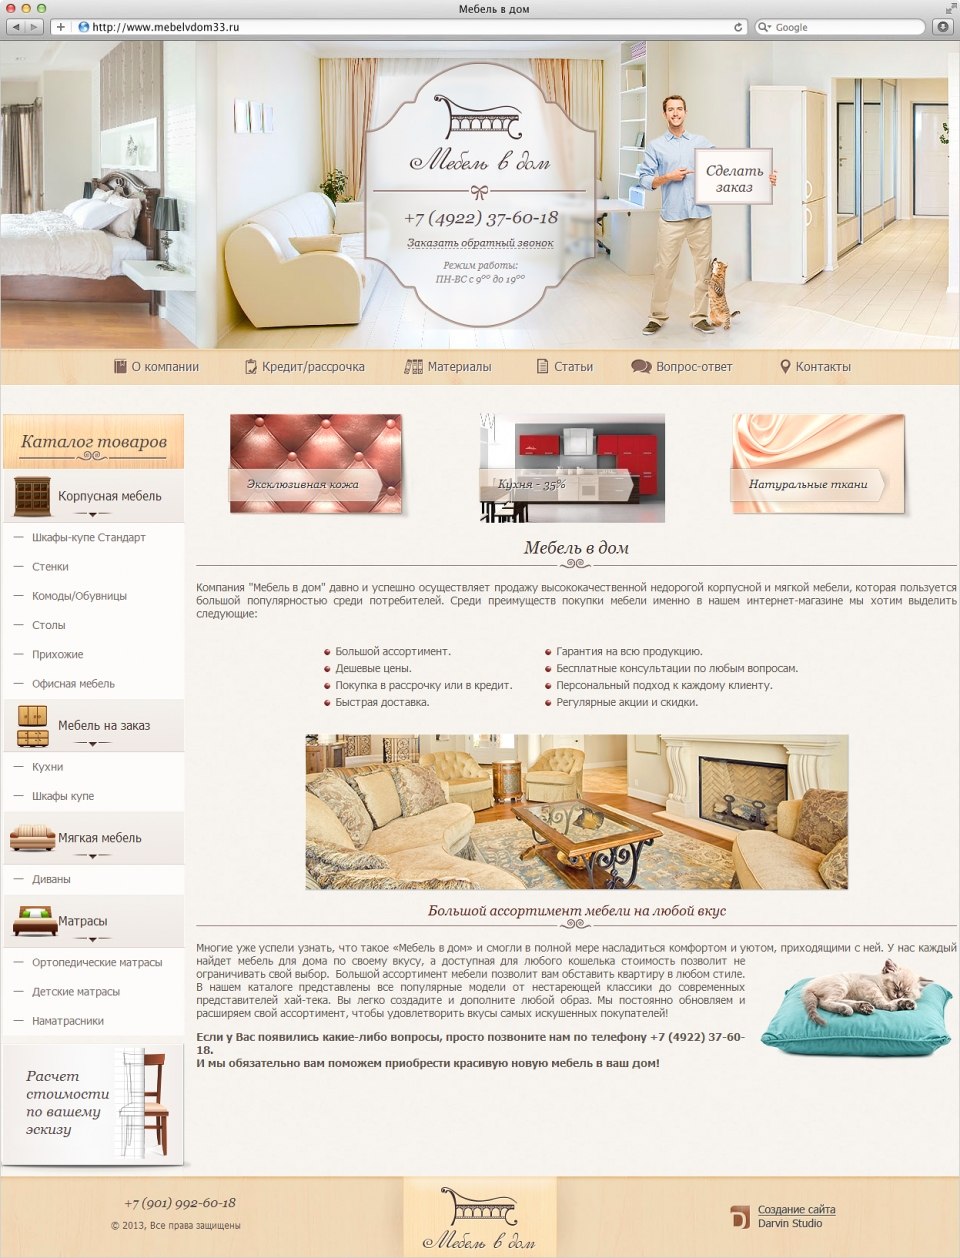 Сайт компании "Мебель в дом" - поставщика корпусной и мягкой мебели